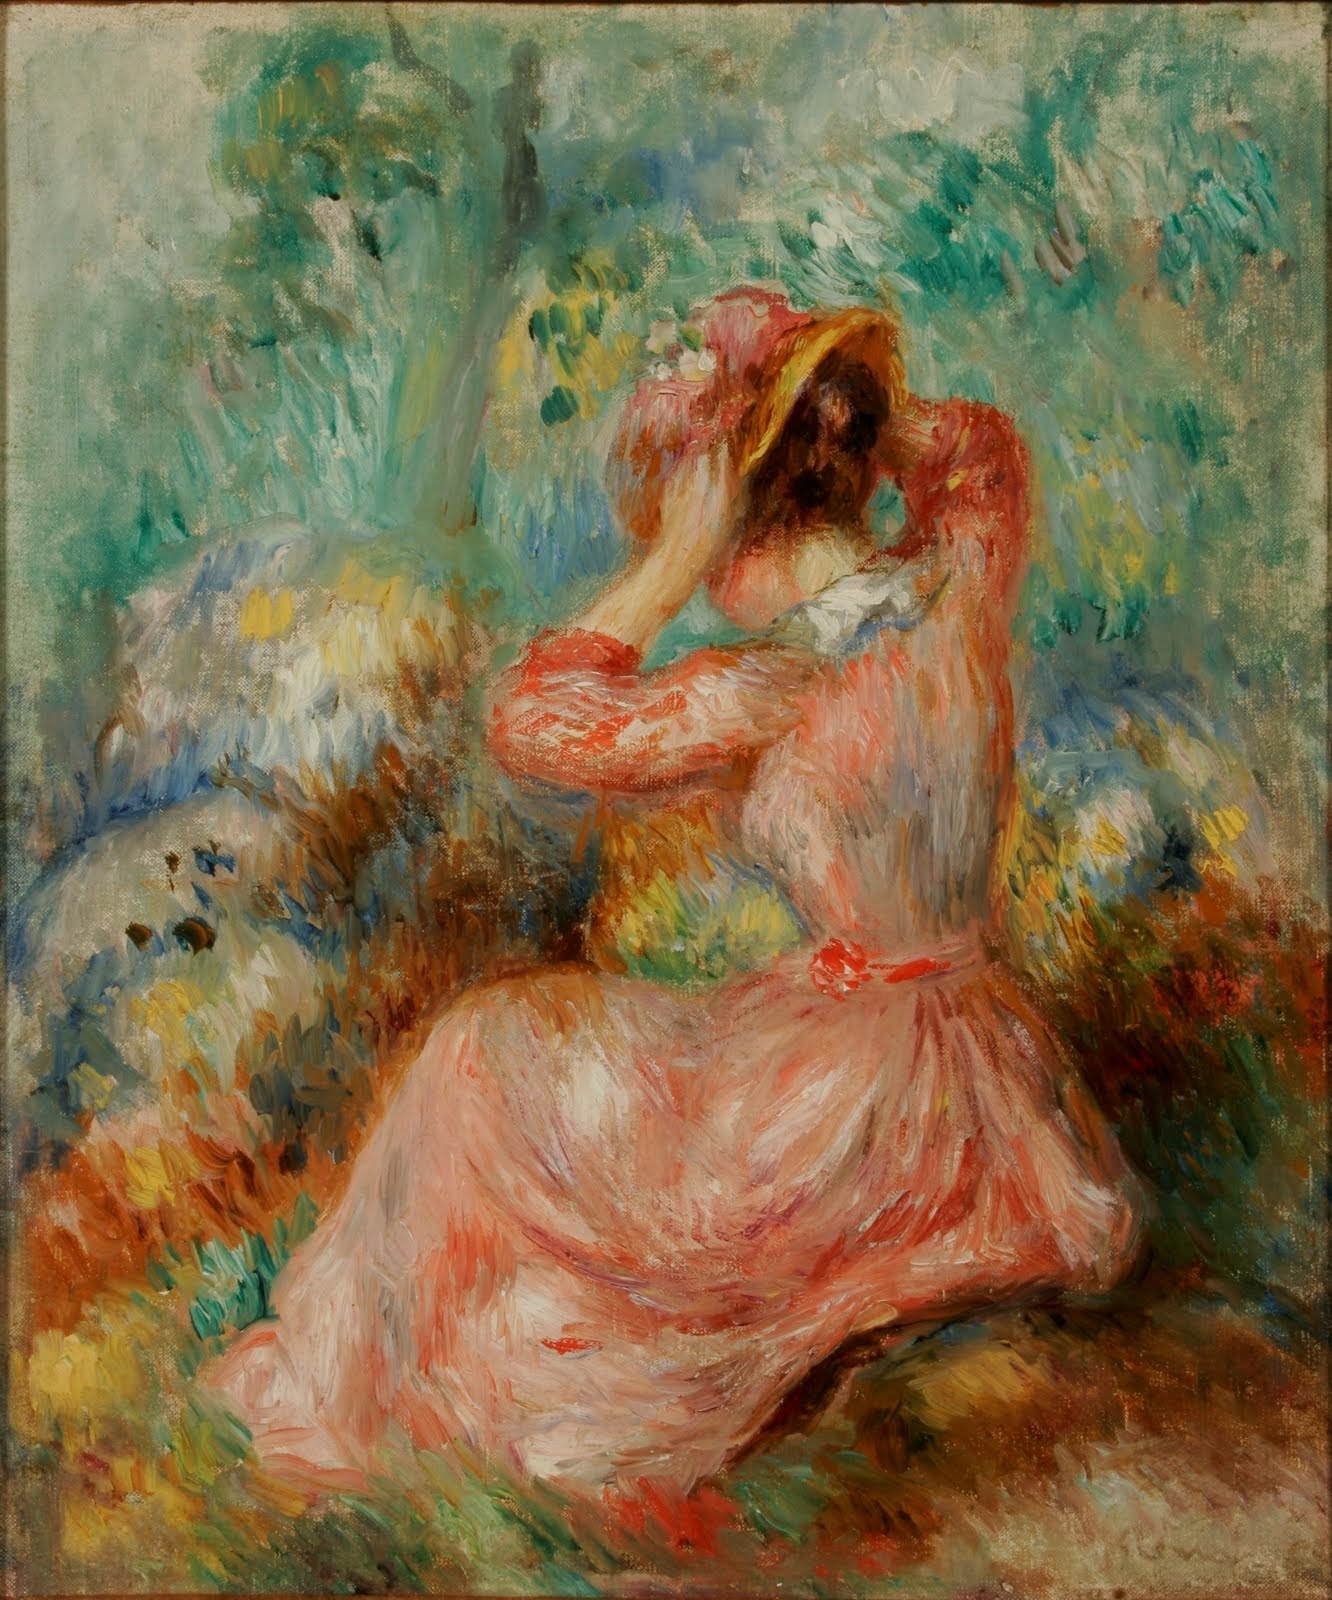 Pierre+Auguste+Renoir-1841-1-19 (767).jpg